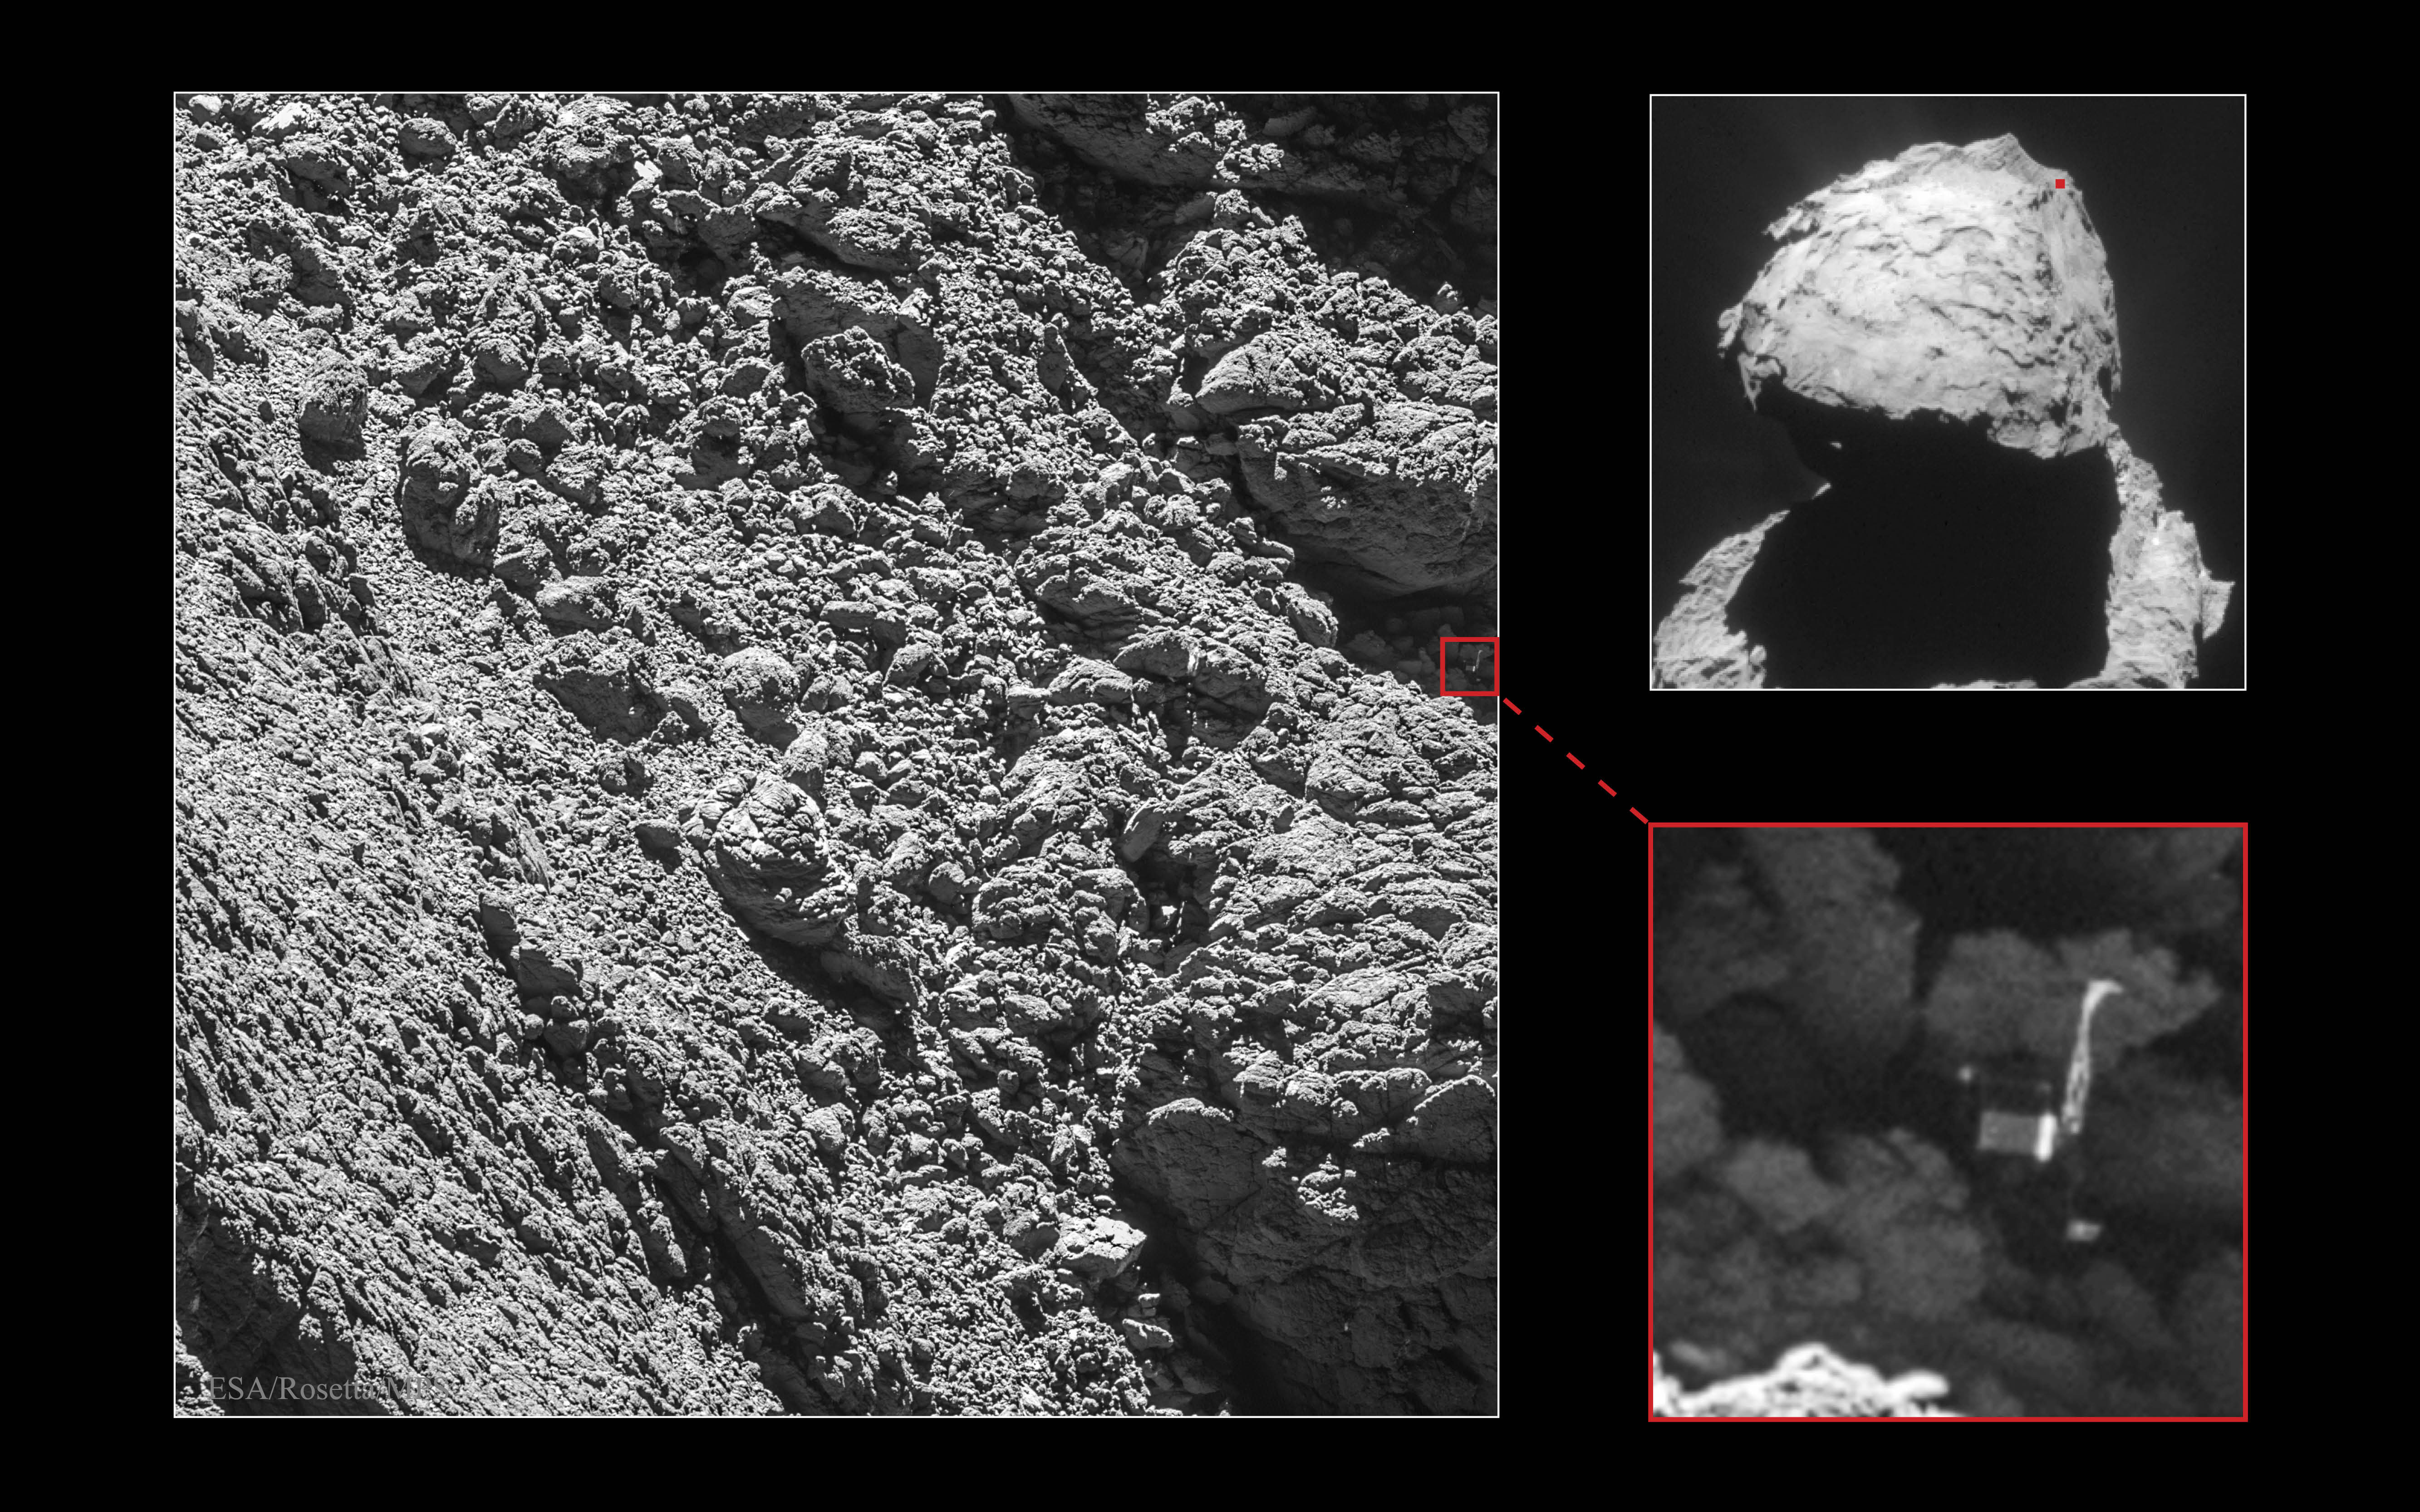 Spuskaemyi zond "Fily" obnaruzhen na komete 67P